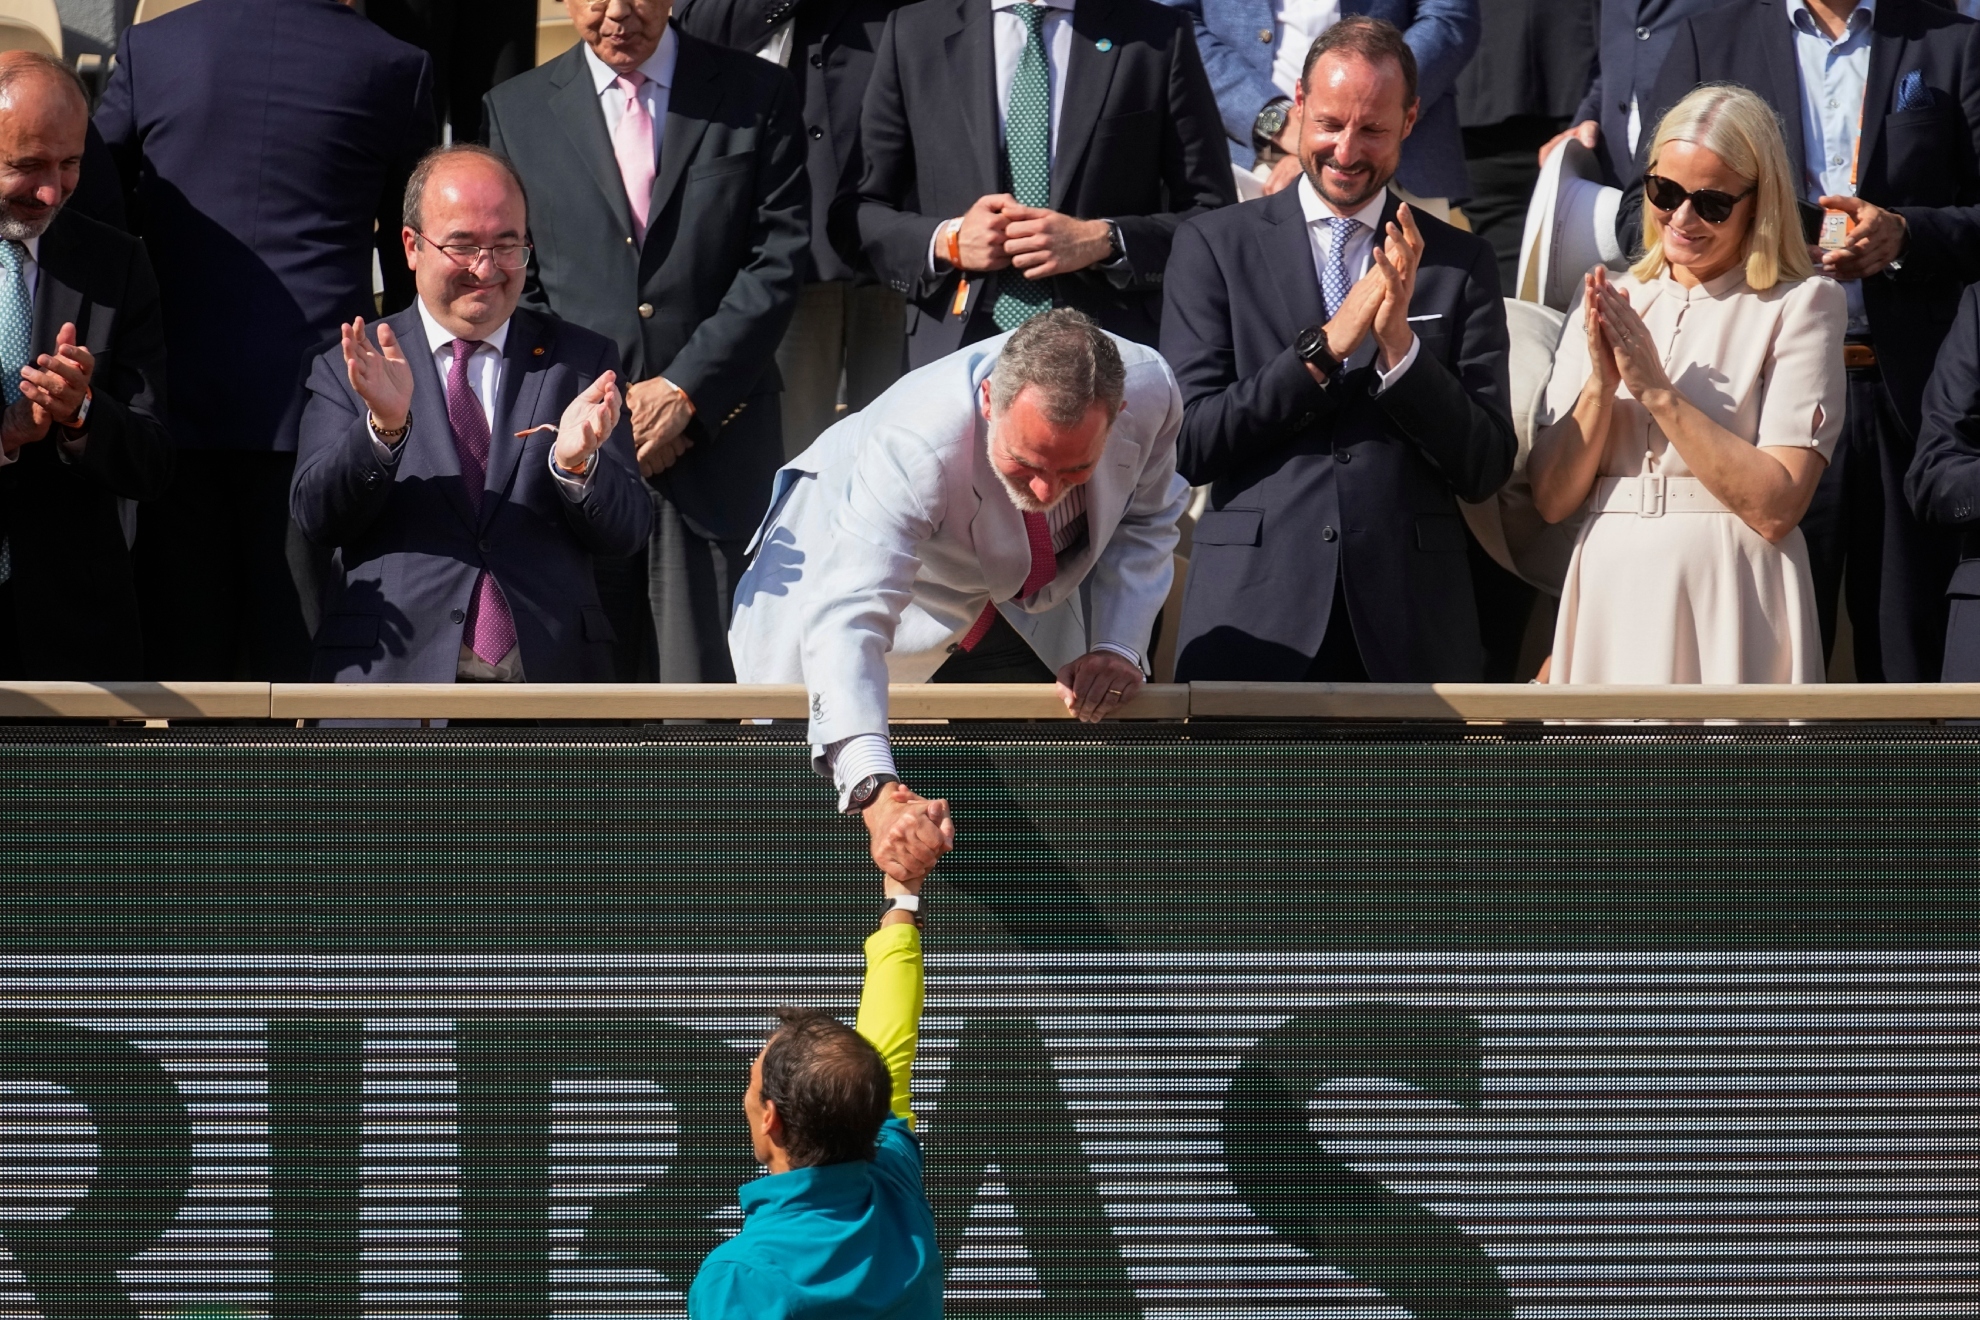 Felipe VI en la final de Roland Garros 2022